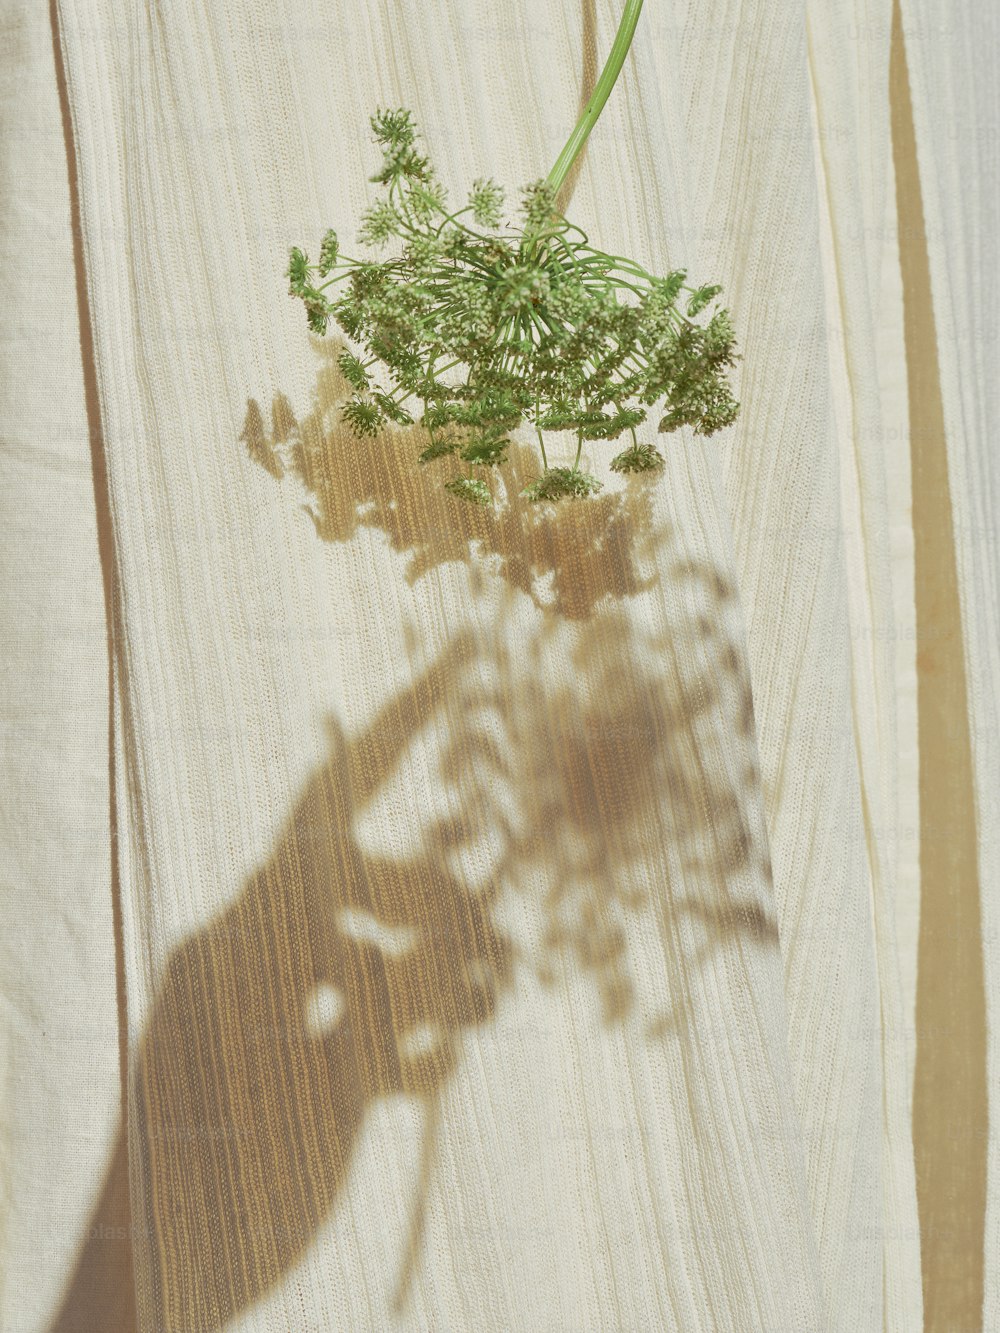 l'ombra di una pianta su una superficie di legno